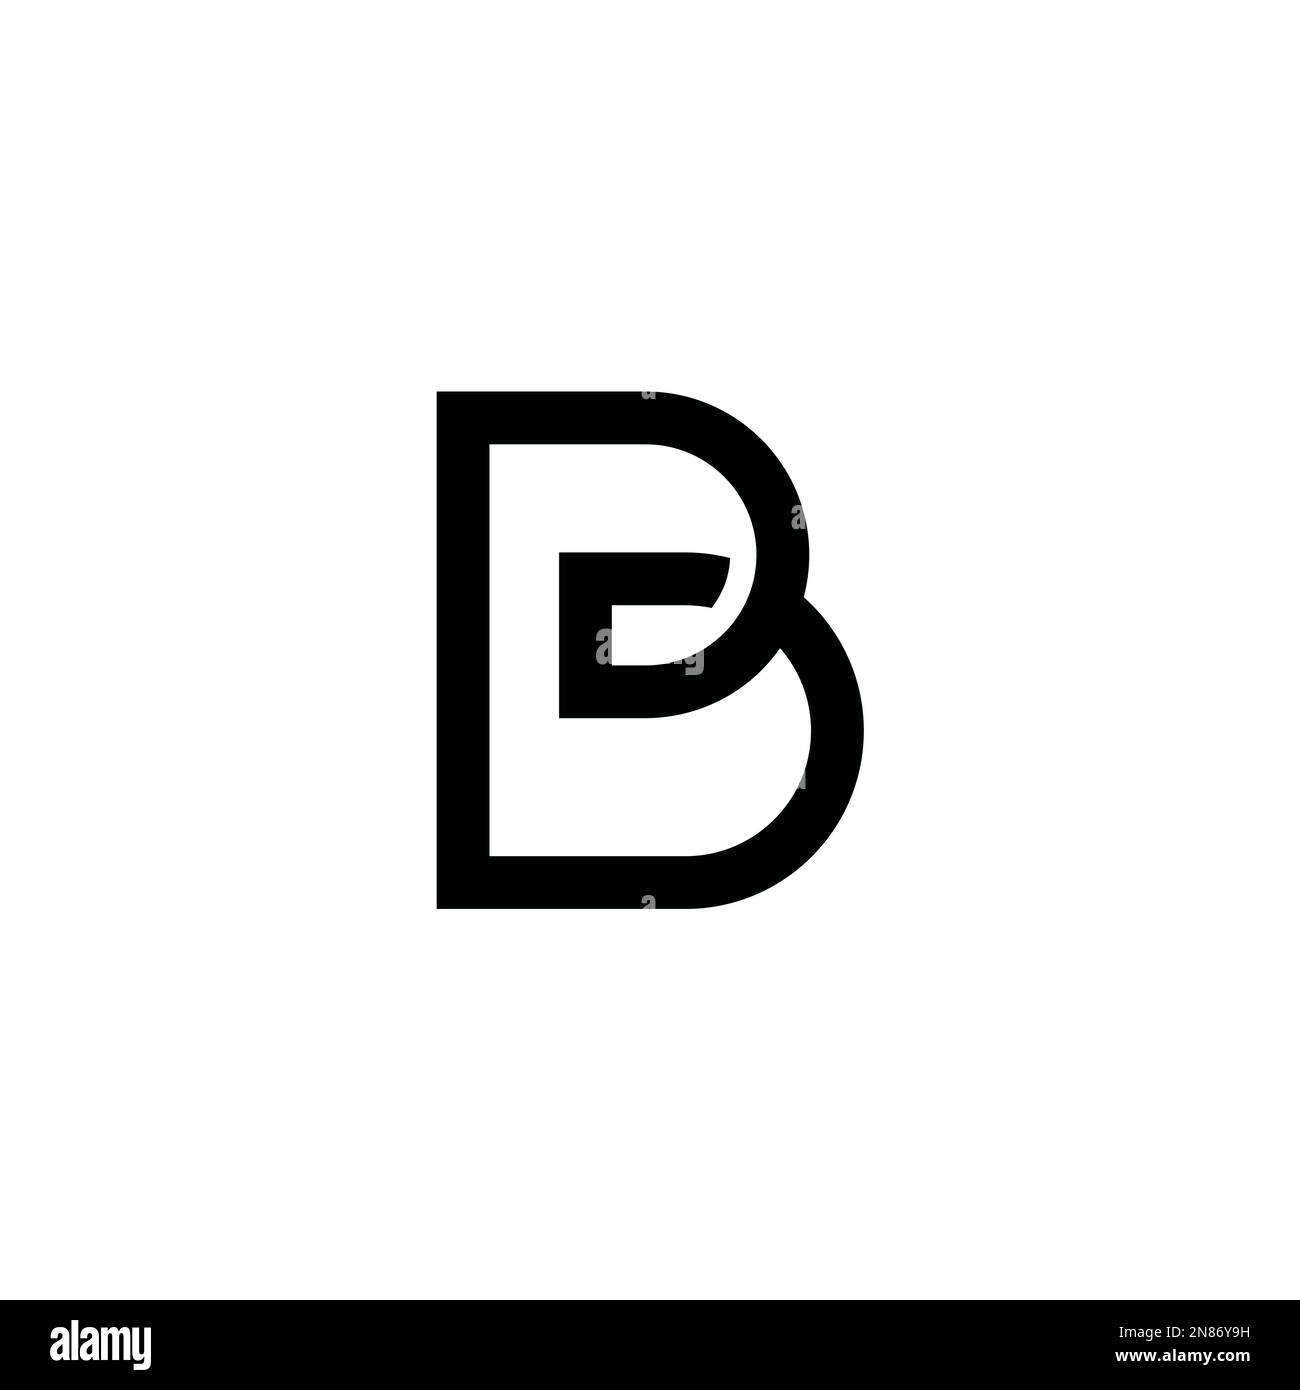 B icon vector text logo Stock Vector